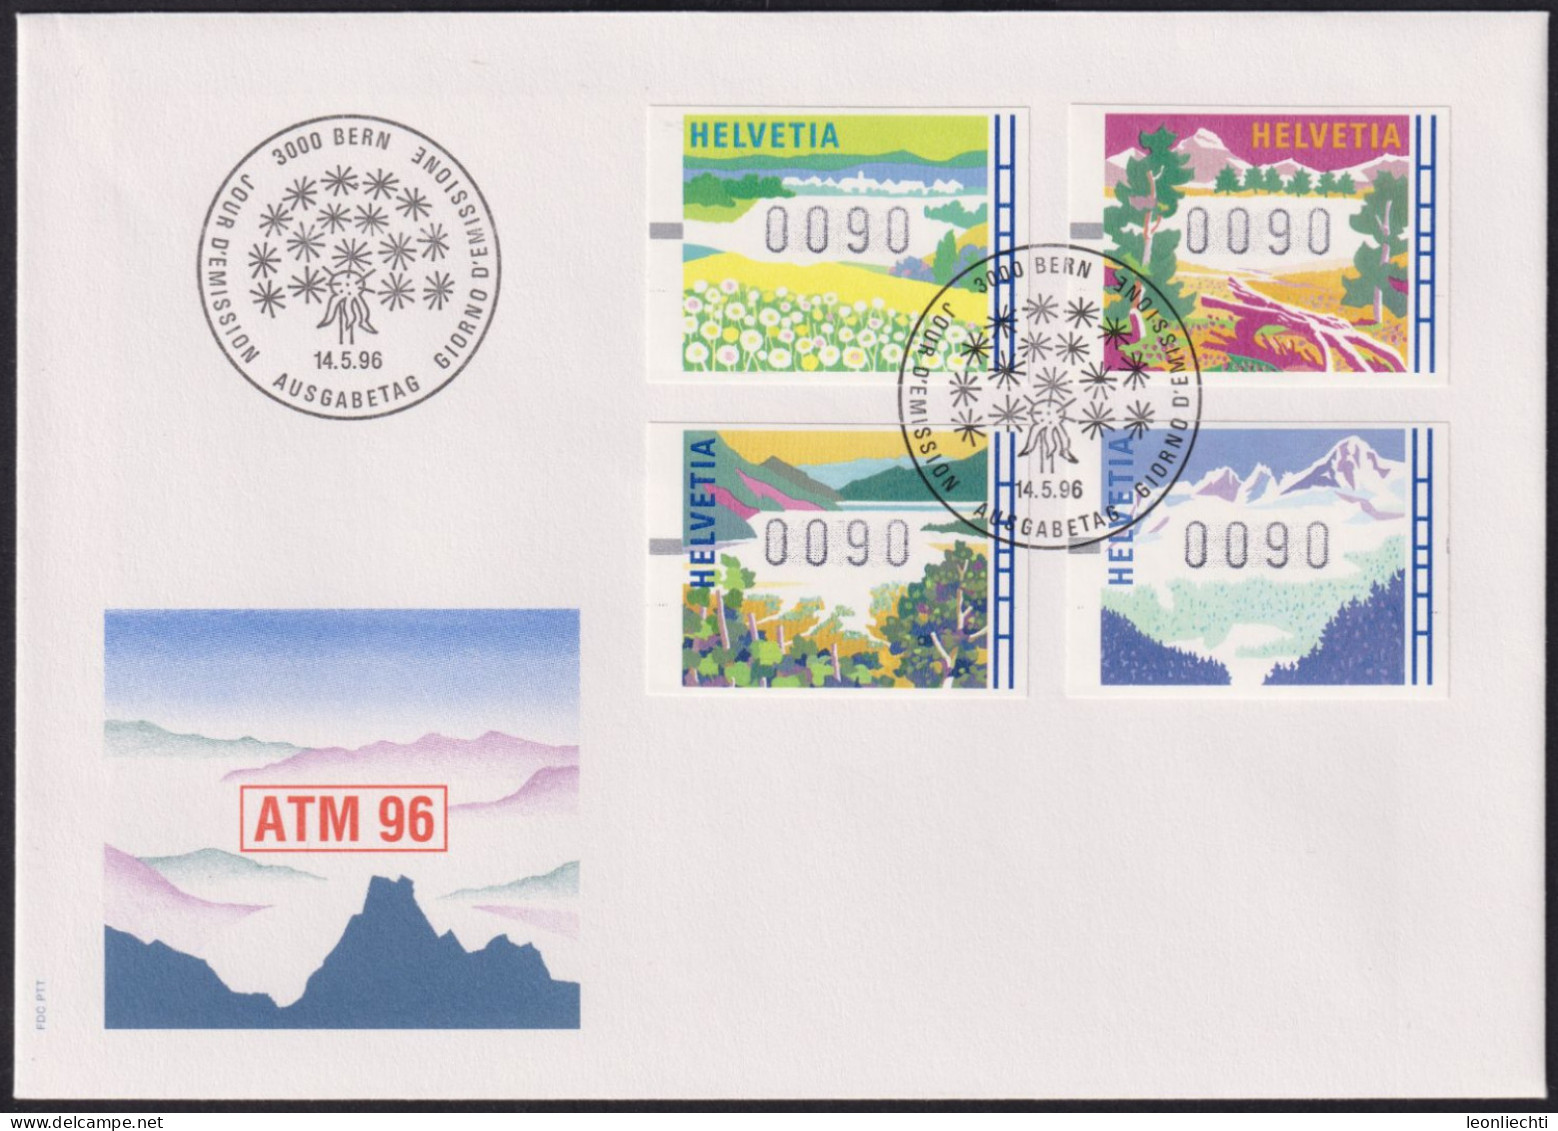 1996 Schweiz, FDC ATM 96, Mi:CH AT7-10, Yt:CH AT 11-14, Zum:CH AT11-14, Jahreszeiten - Automatenzegels